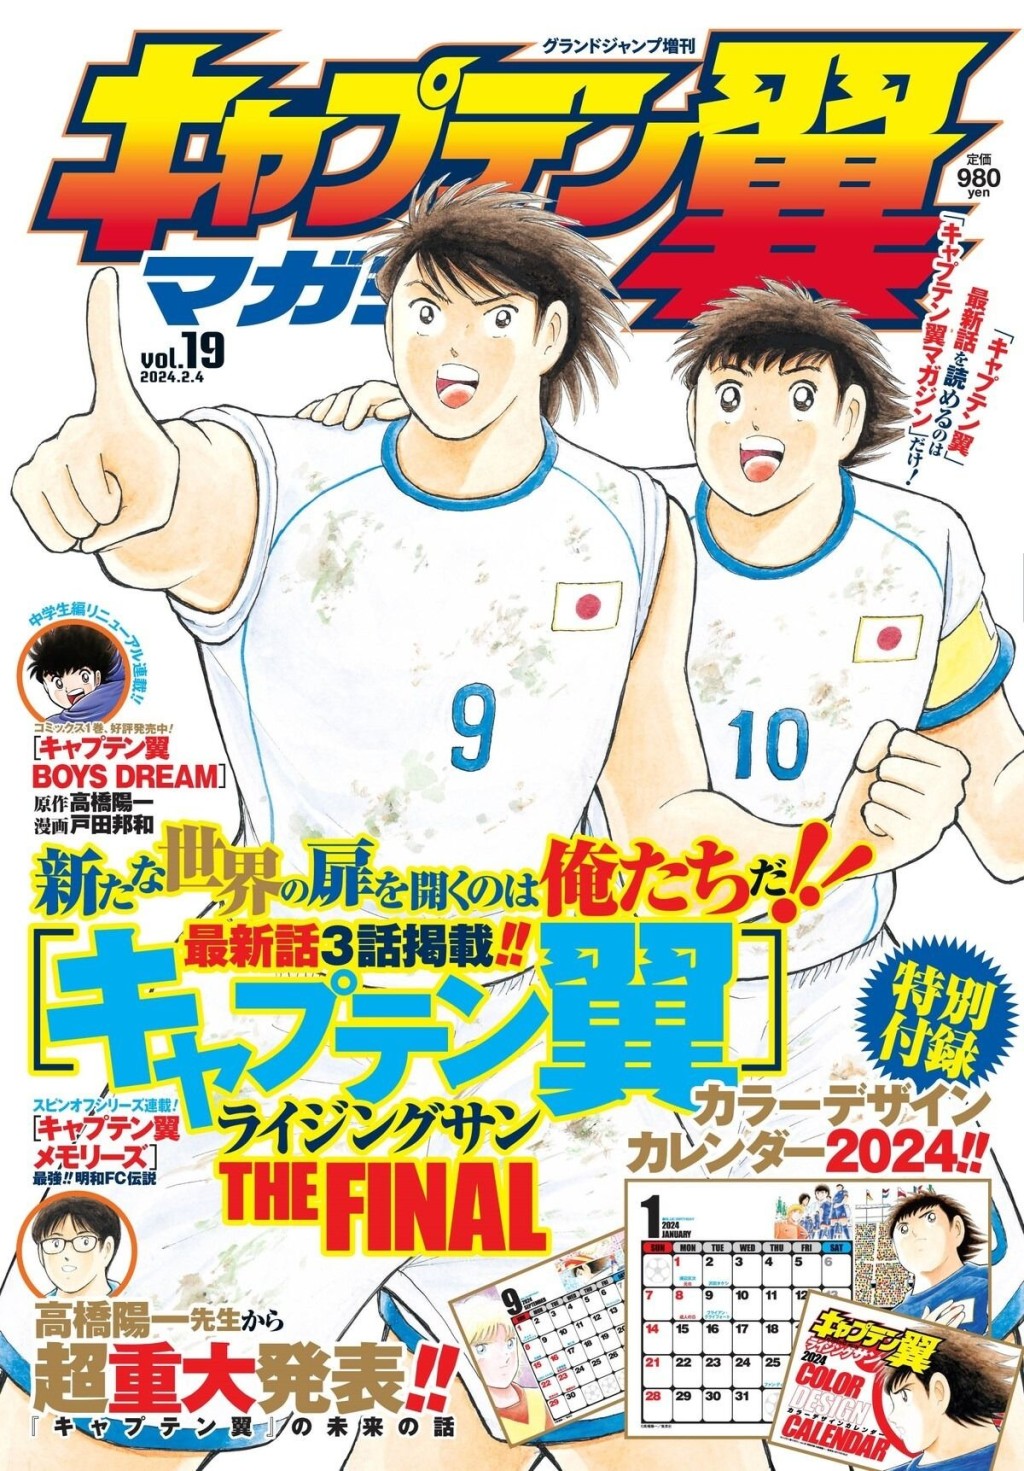 《足球小将》今年4月将结束连载。图为《周刊少年Jump》最新一期封面